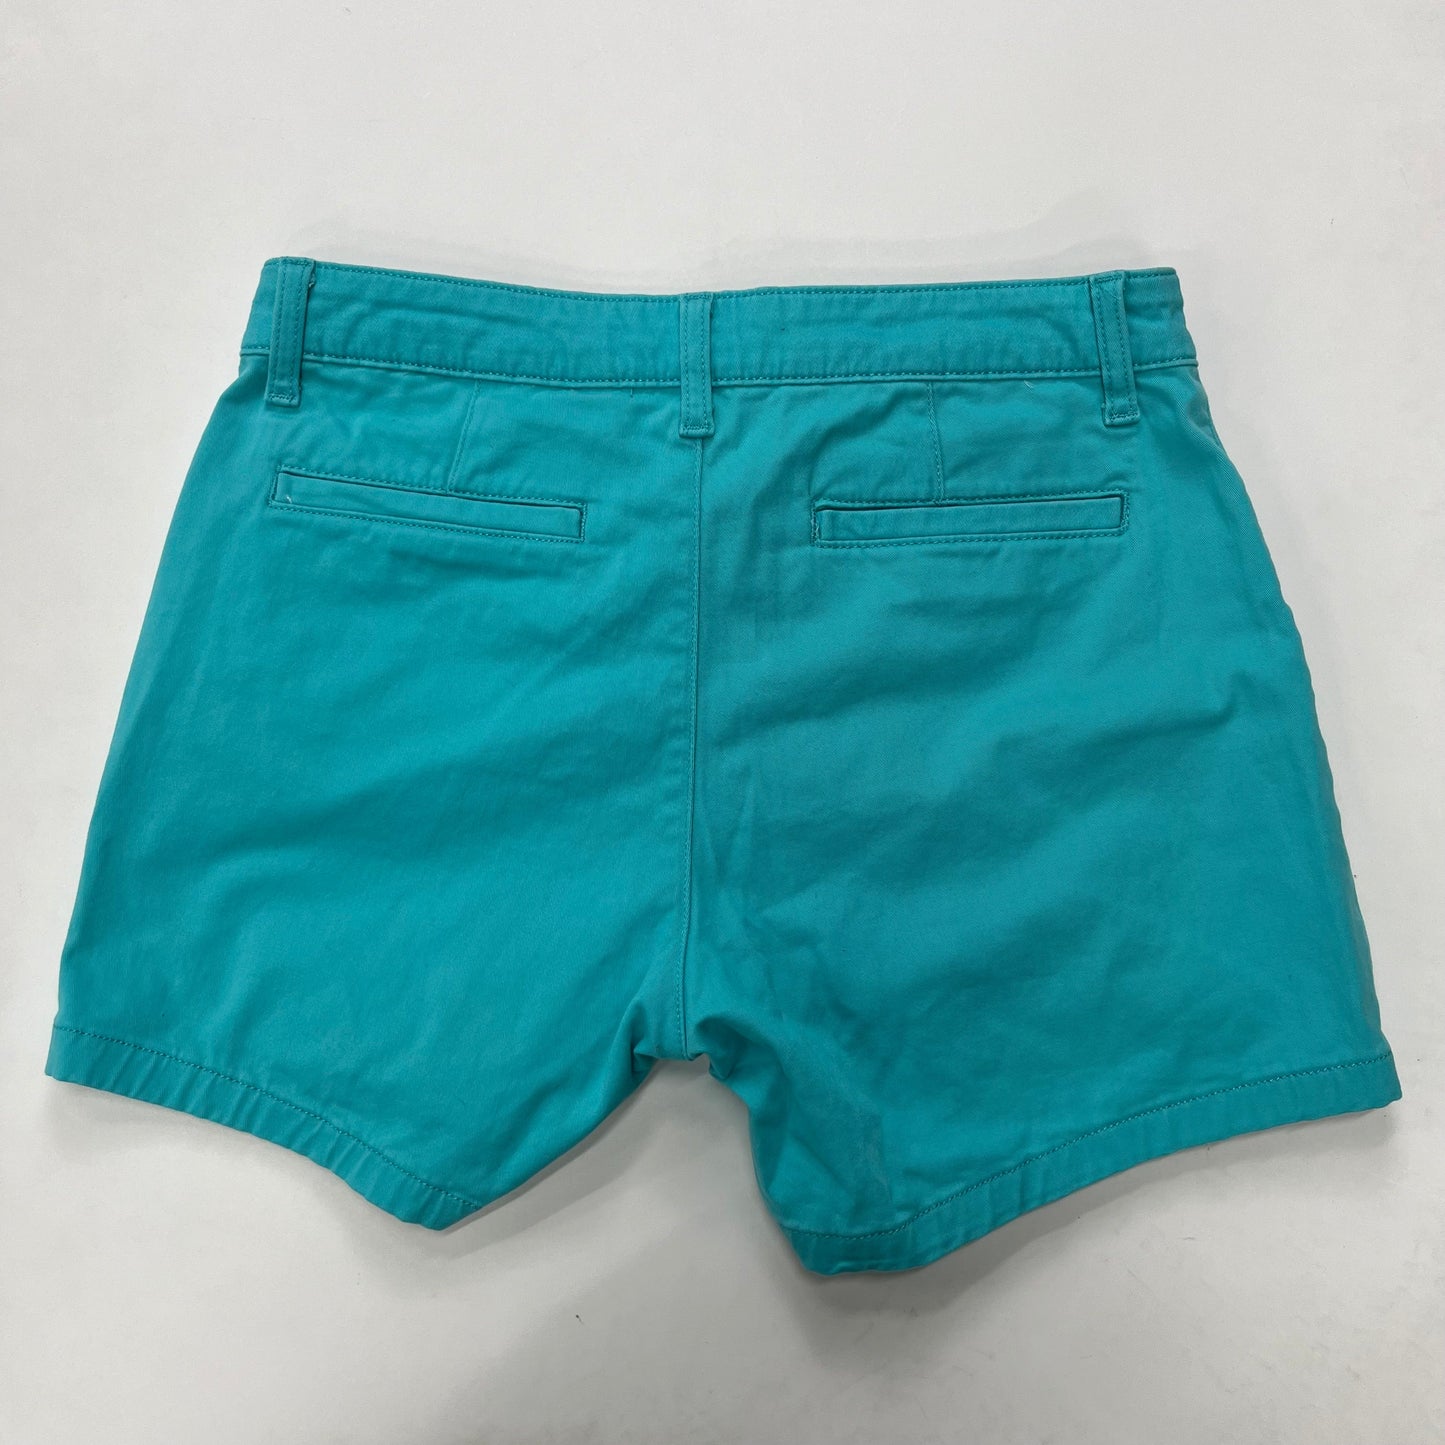 Turquoise Shorts St Johns Bay, Size 6